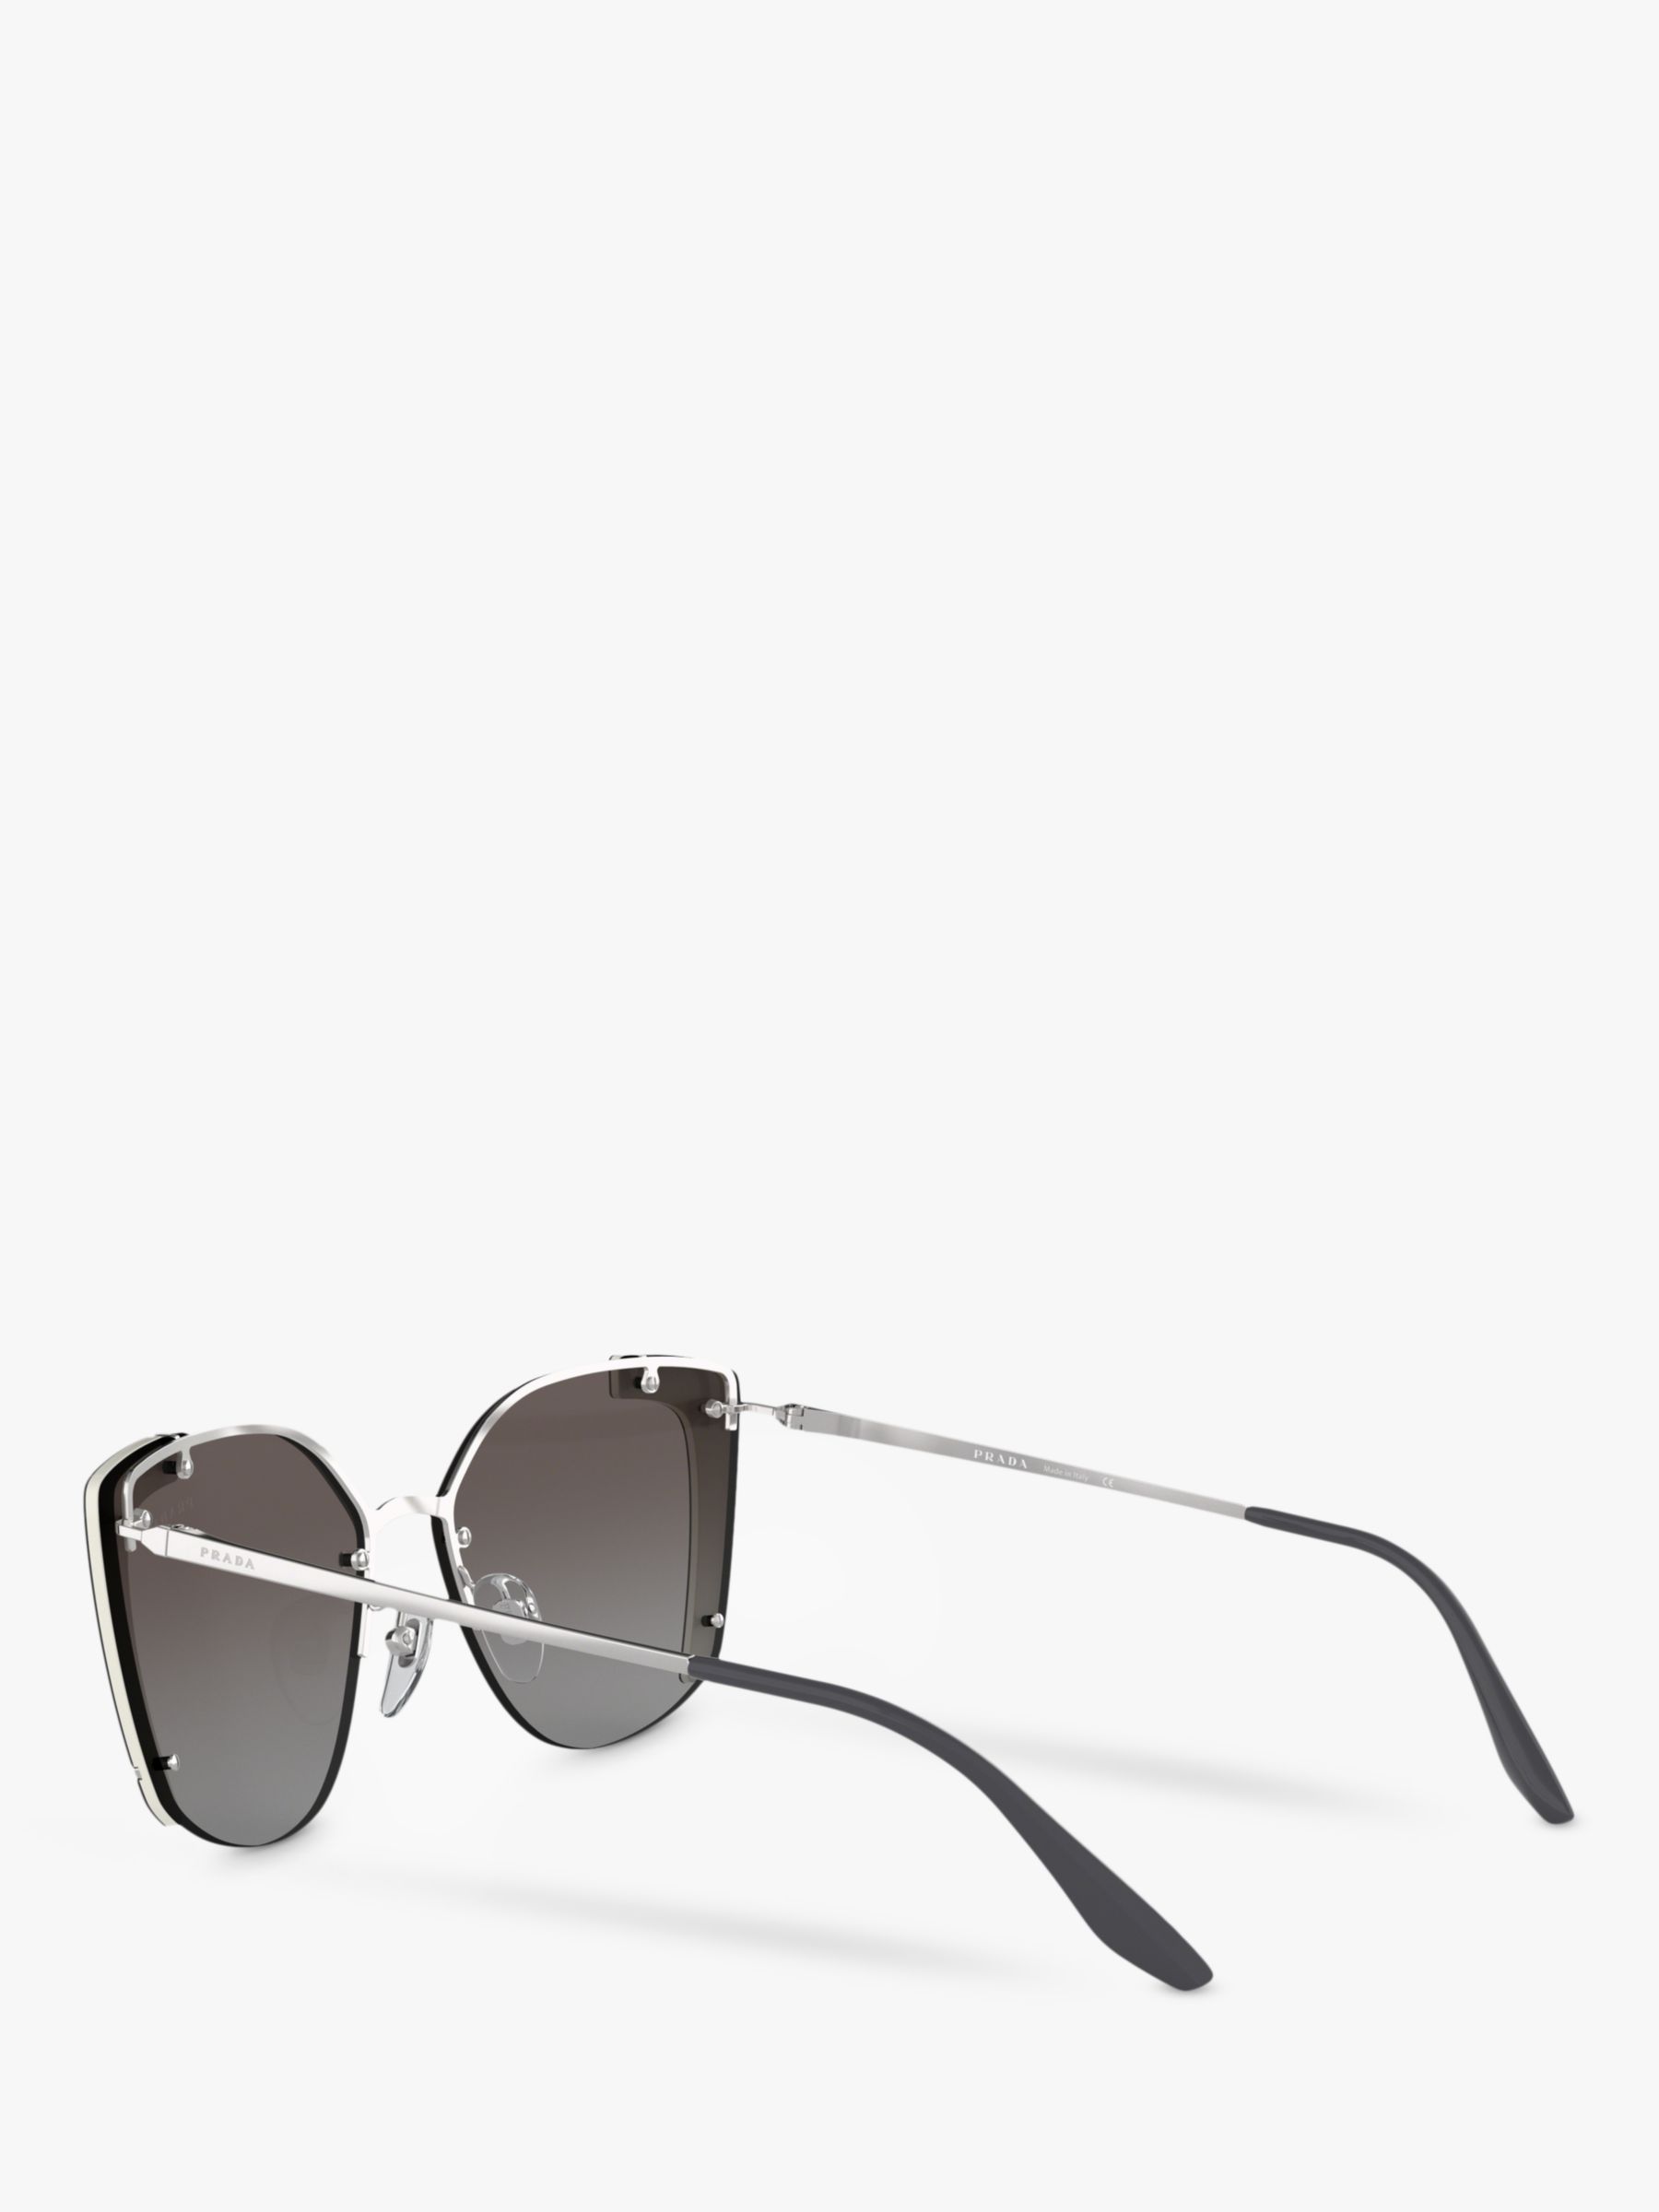 Prada PR 59VS Women's Square Sunglasses, Silver/Mirror Grey